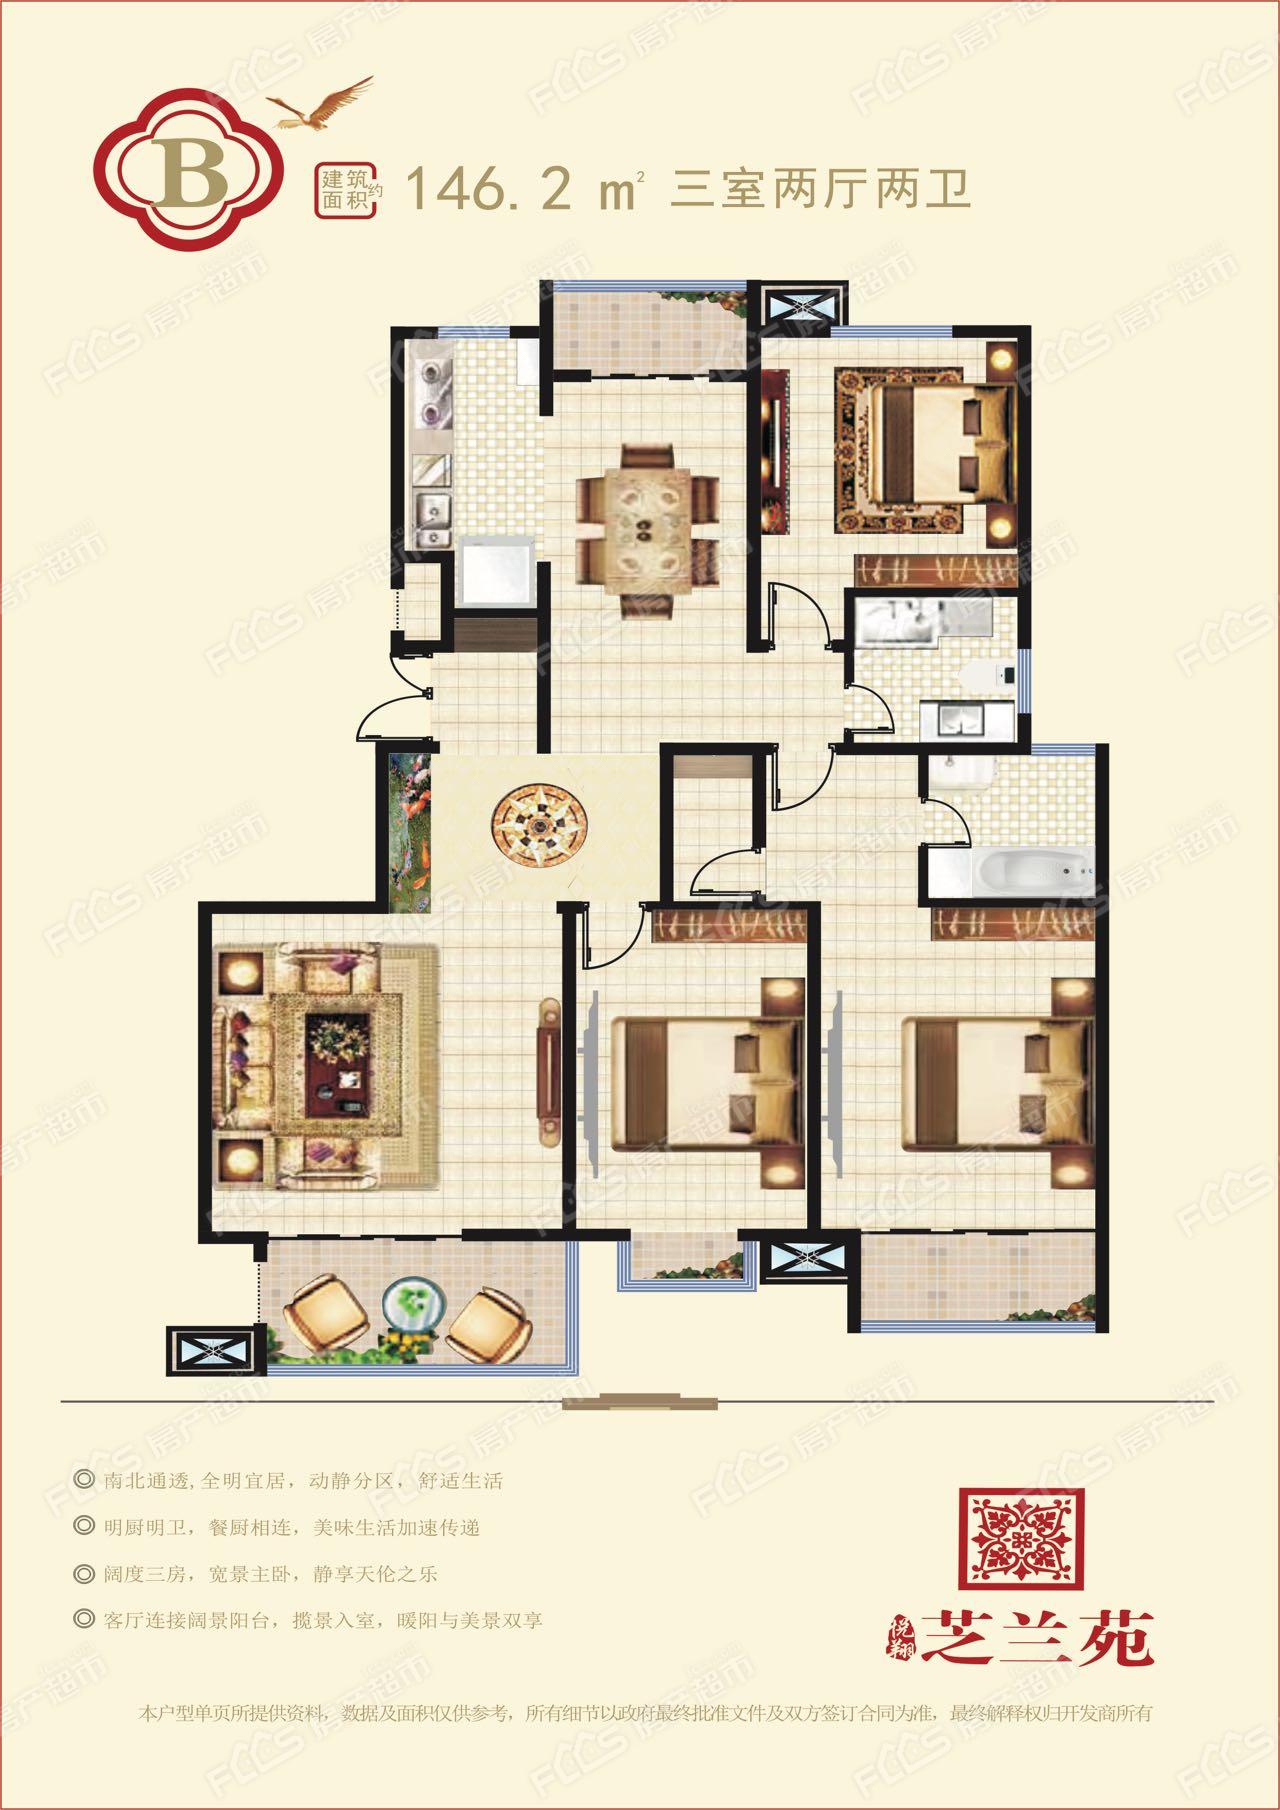 悦翔·芝兰苑洋房户型图146.2平米三室两厅两卫